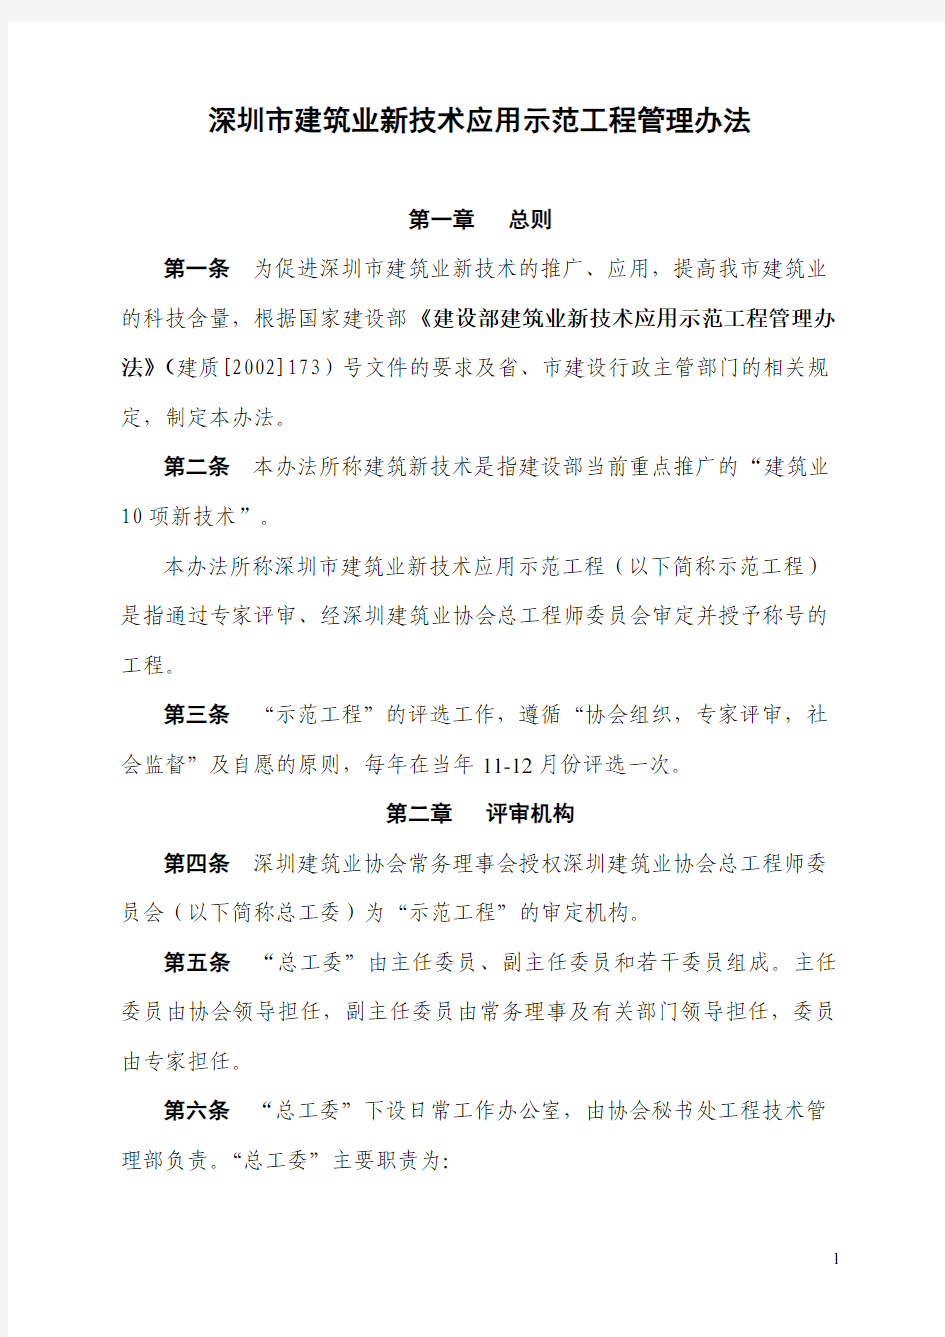 深圳市建筑业新技术应用示范工程管理办法